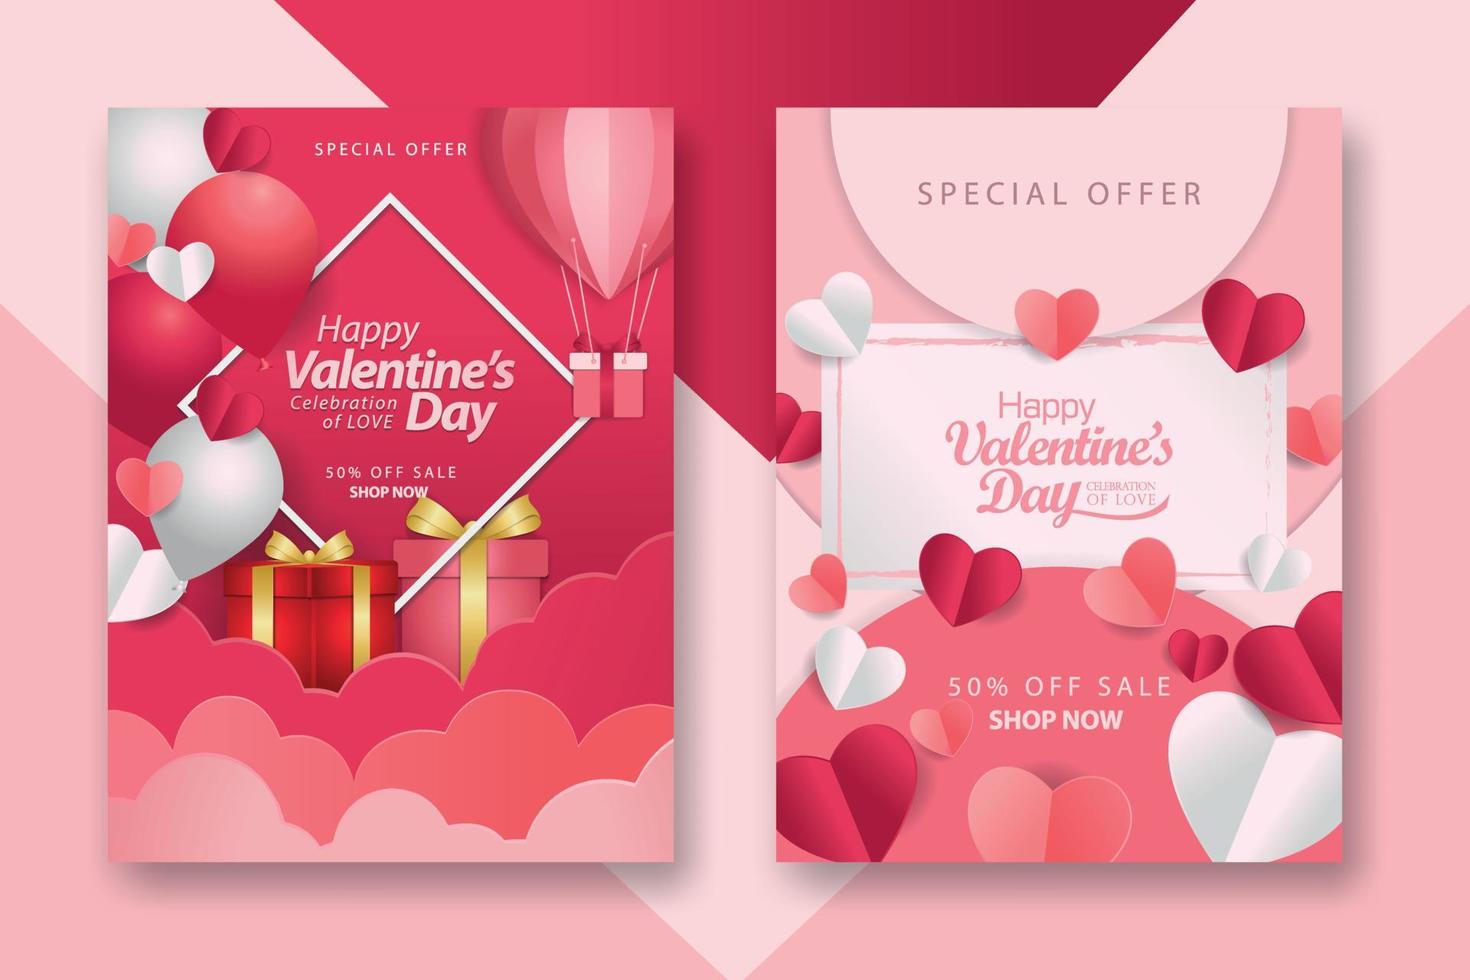 poster concettuali di san valentino con cuori di carta 3d rossi e rosa e cornice su sfondo geometrico. simpatici striscioni o biglietti di auguri per la vendita di amore vettore